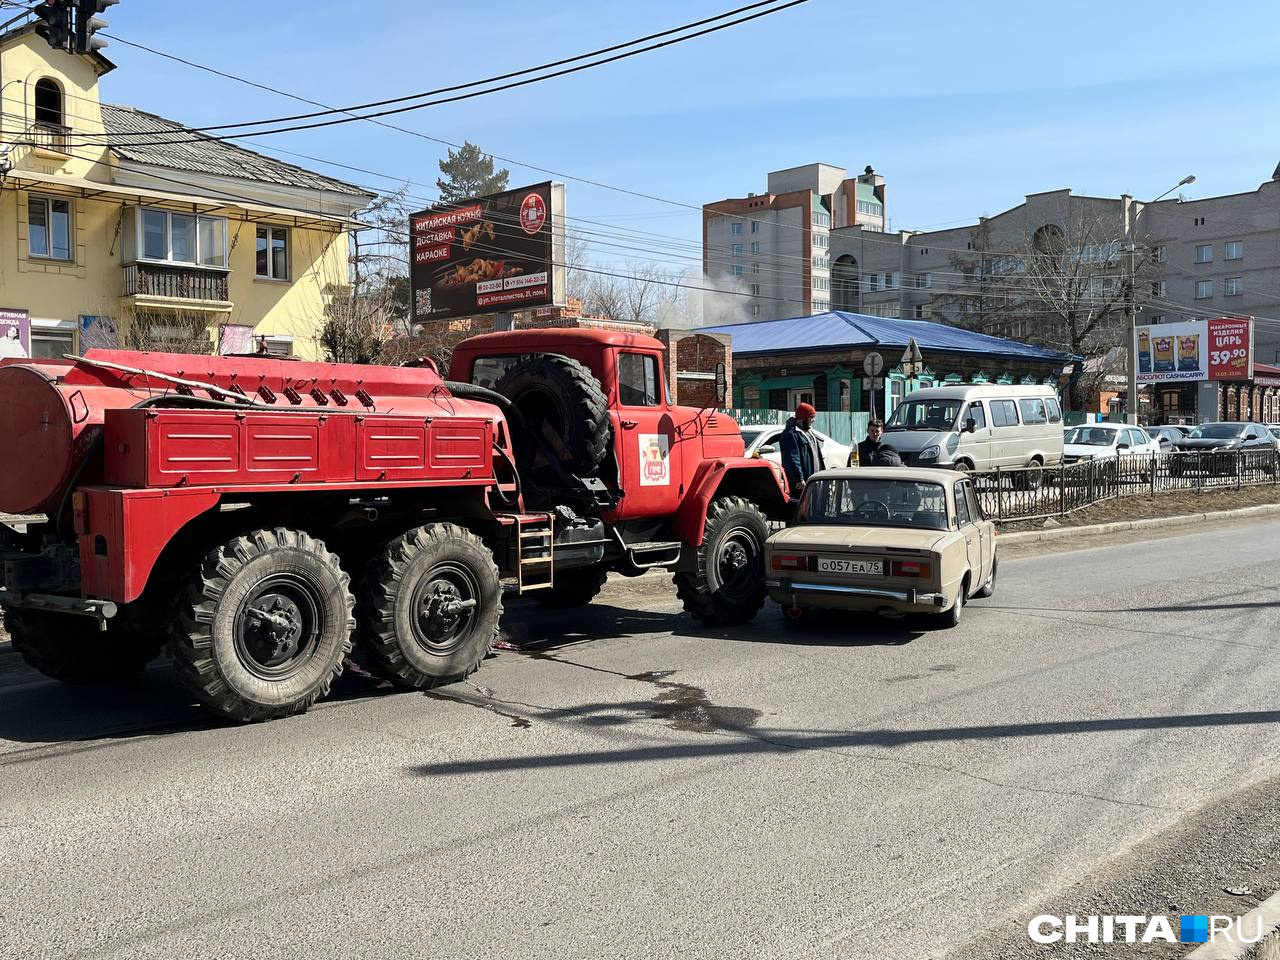 Машина департамента ГО и ЧС и «Жигули» столкнулись в центре Читы